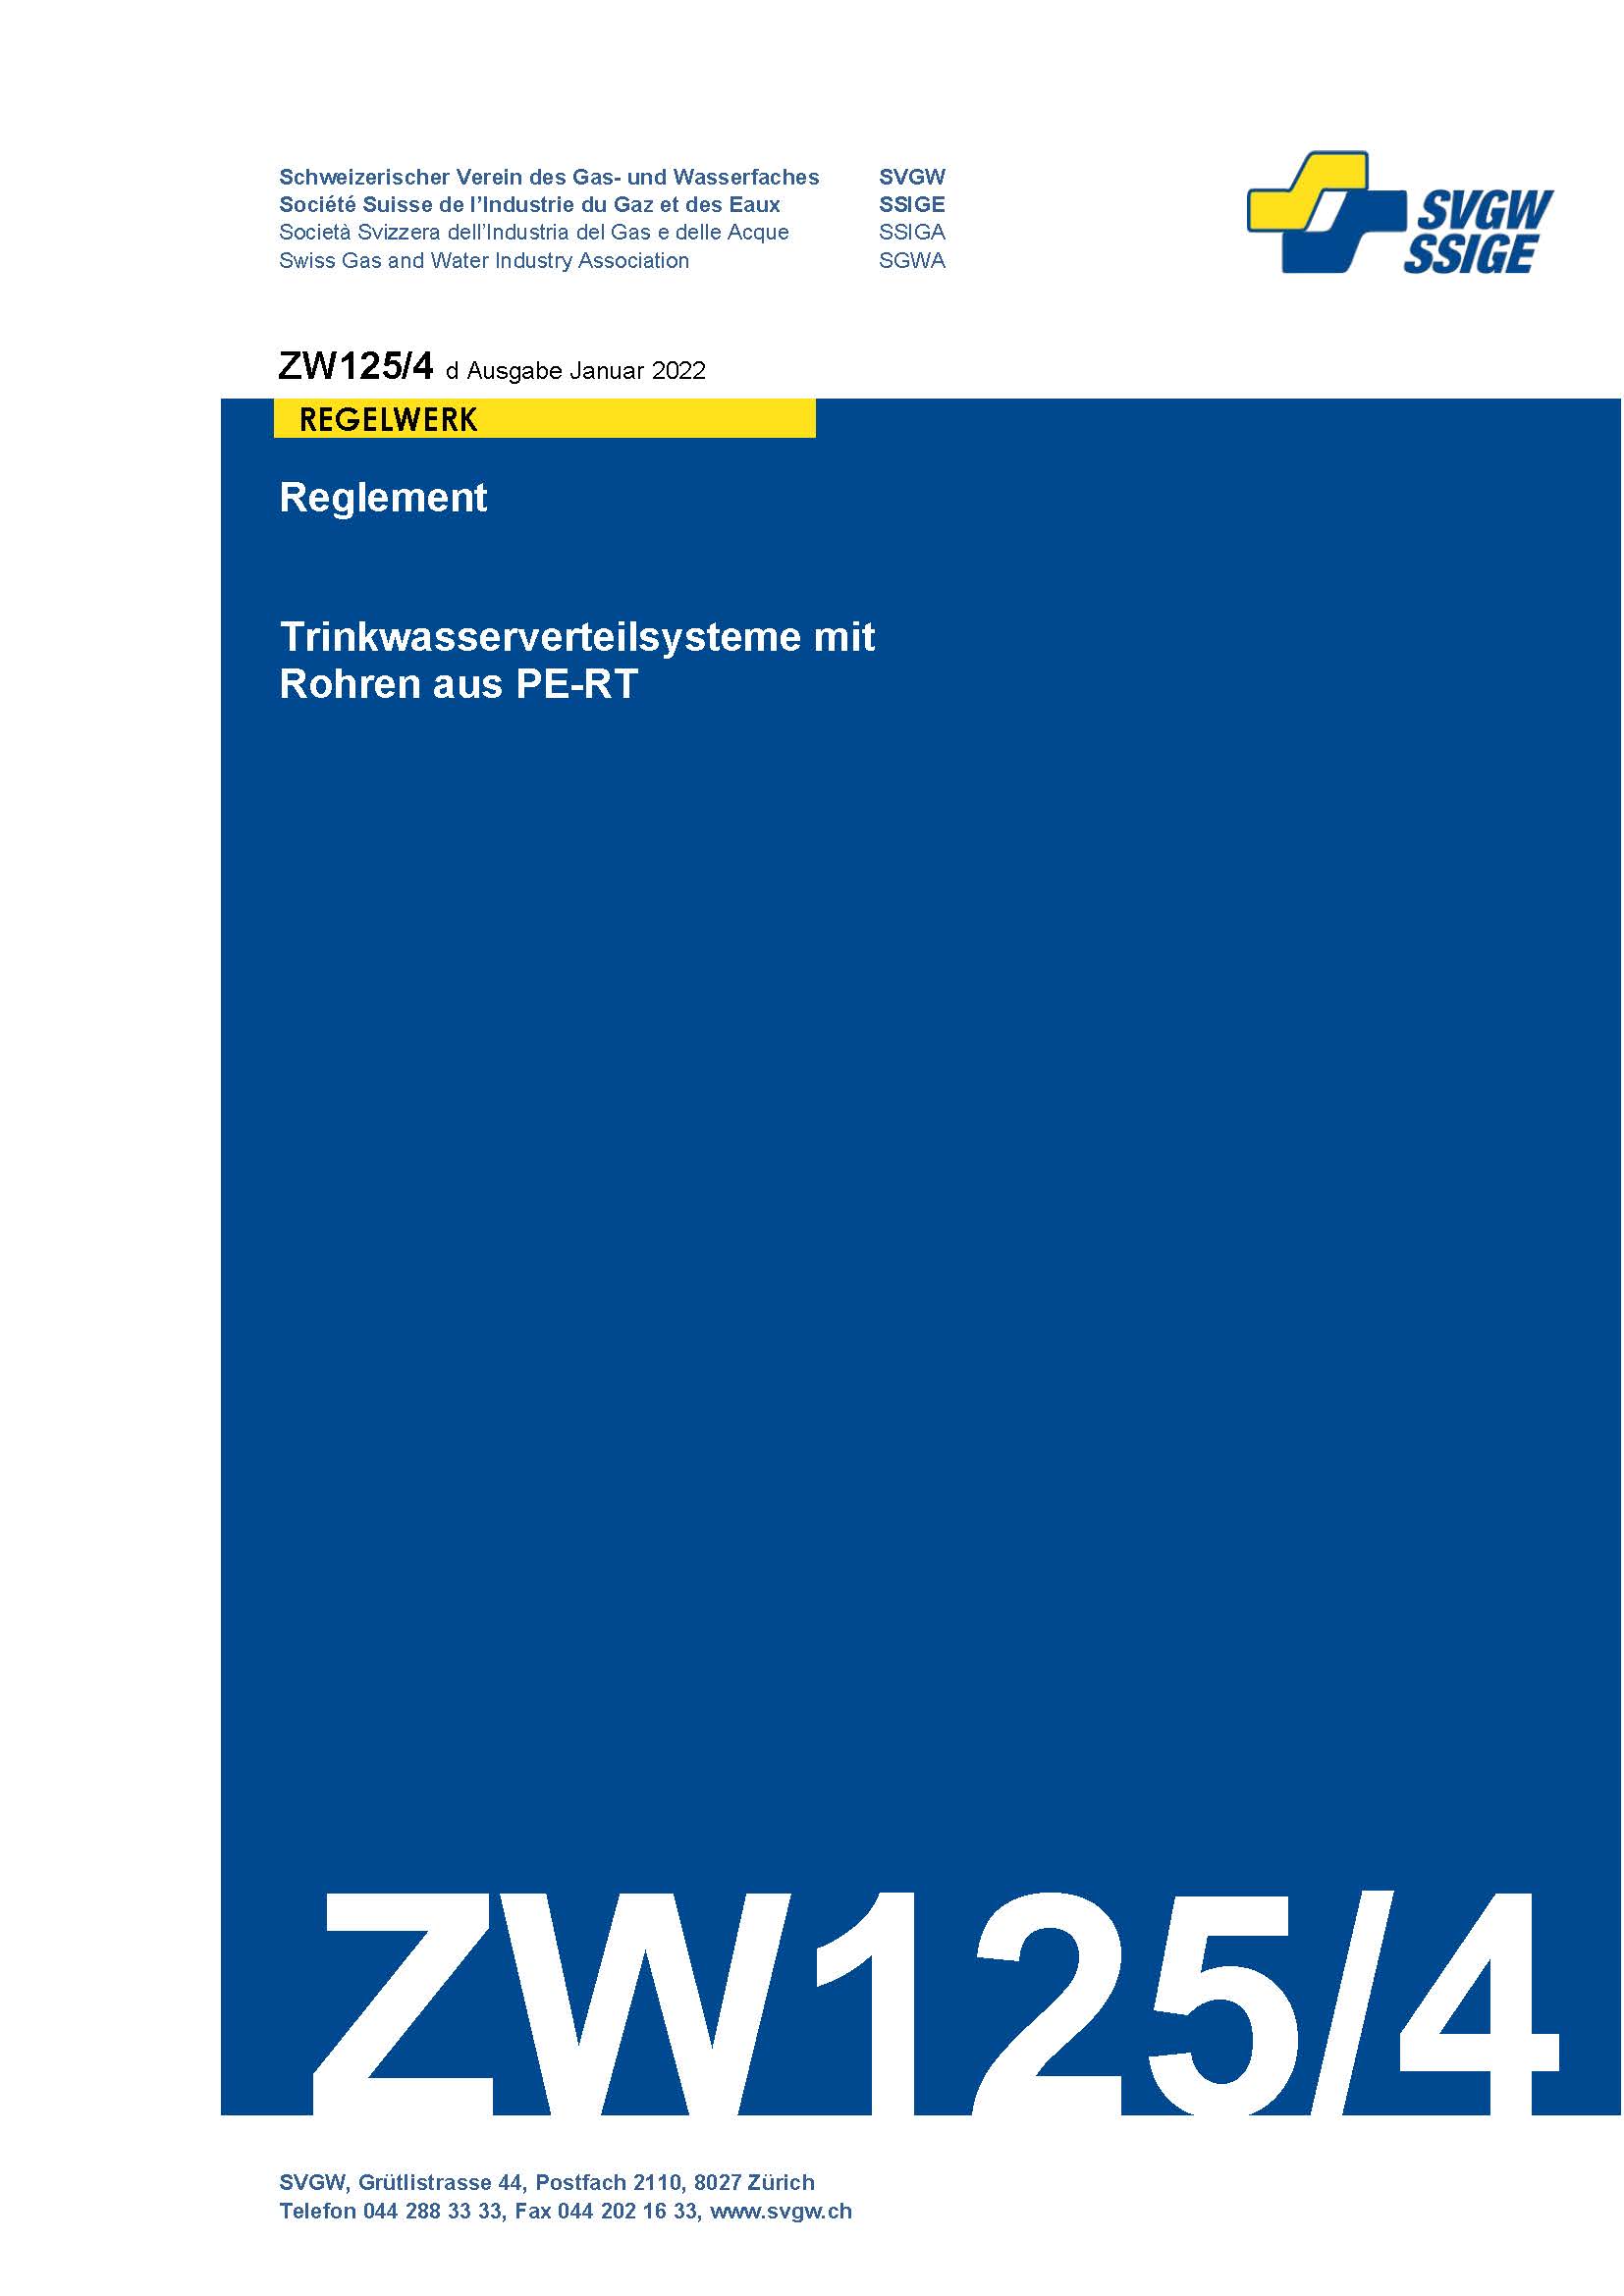 ZW125/4 d - Reglement; Trinkwasserverteilsysteme mit Rohren aus PE-RT